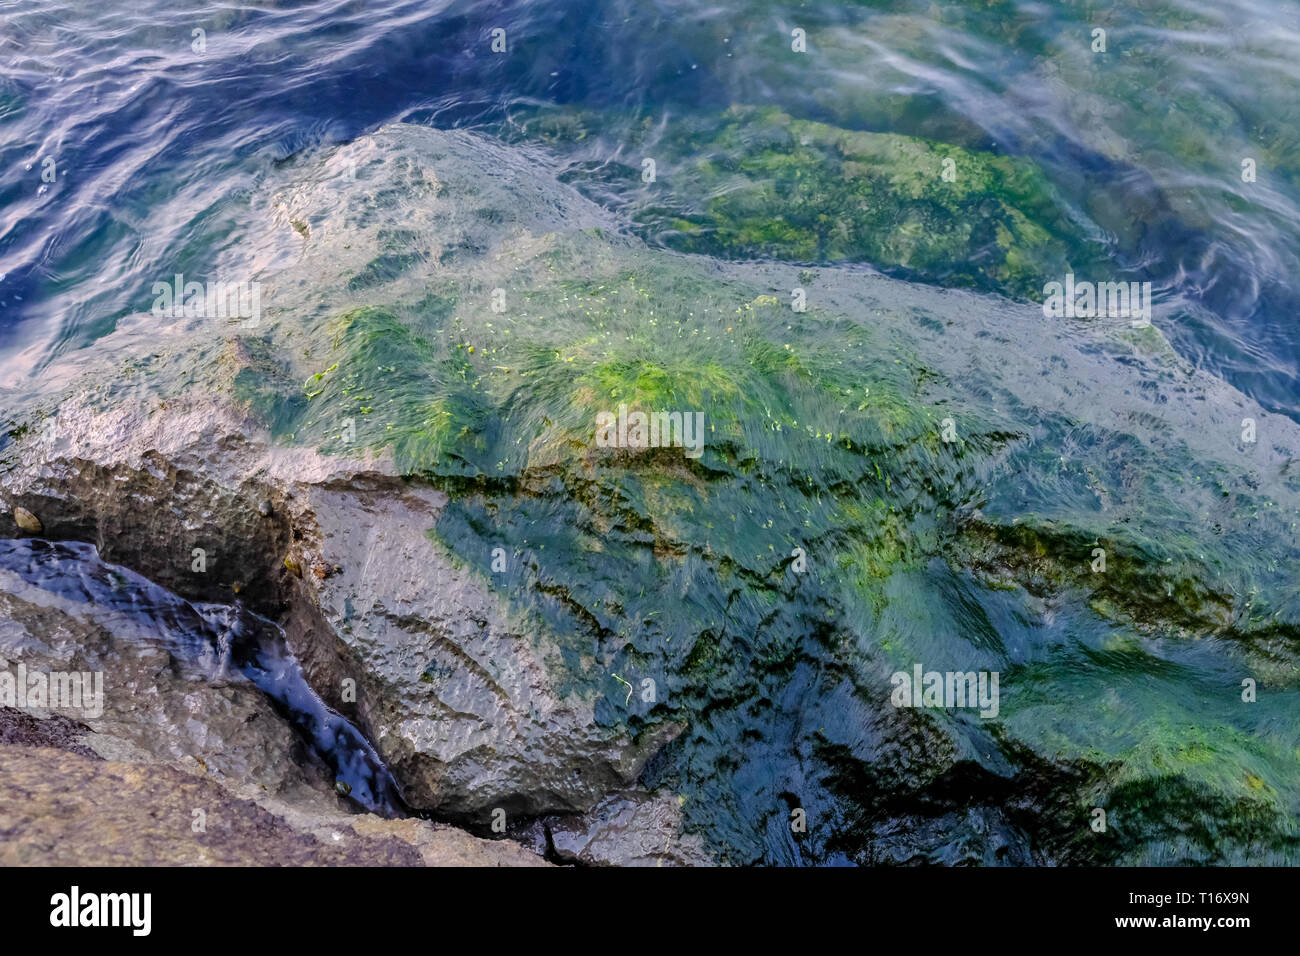 Dettaglio colpo di moss lichen ( alghe) sulla roccia bagnata in riva al mare Foto Stock